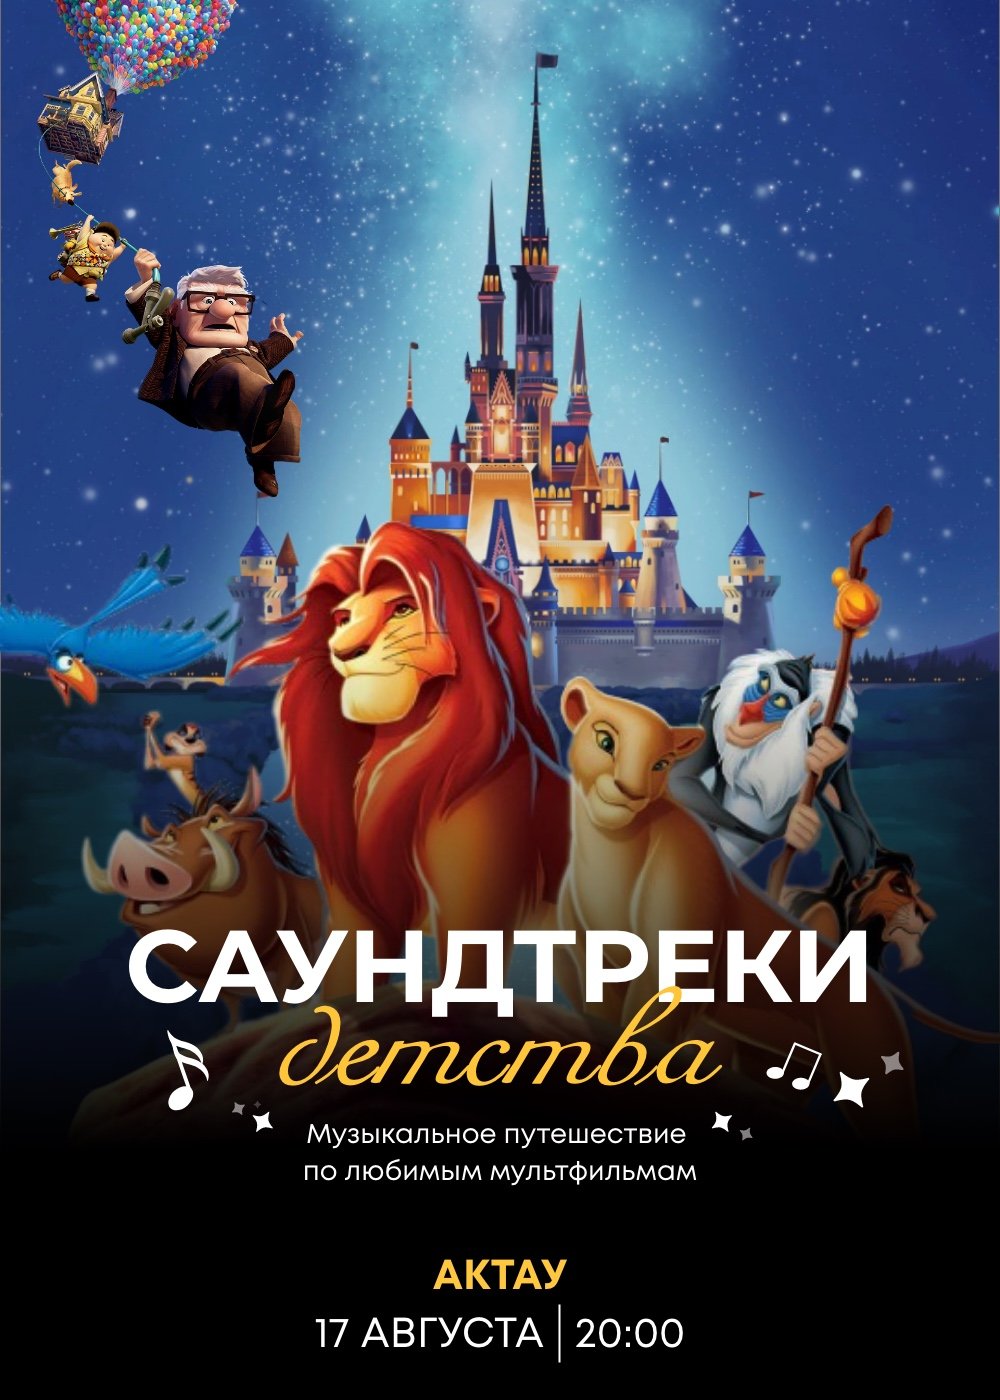 «Disney music world» Tynda Music in Aktau